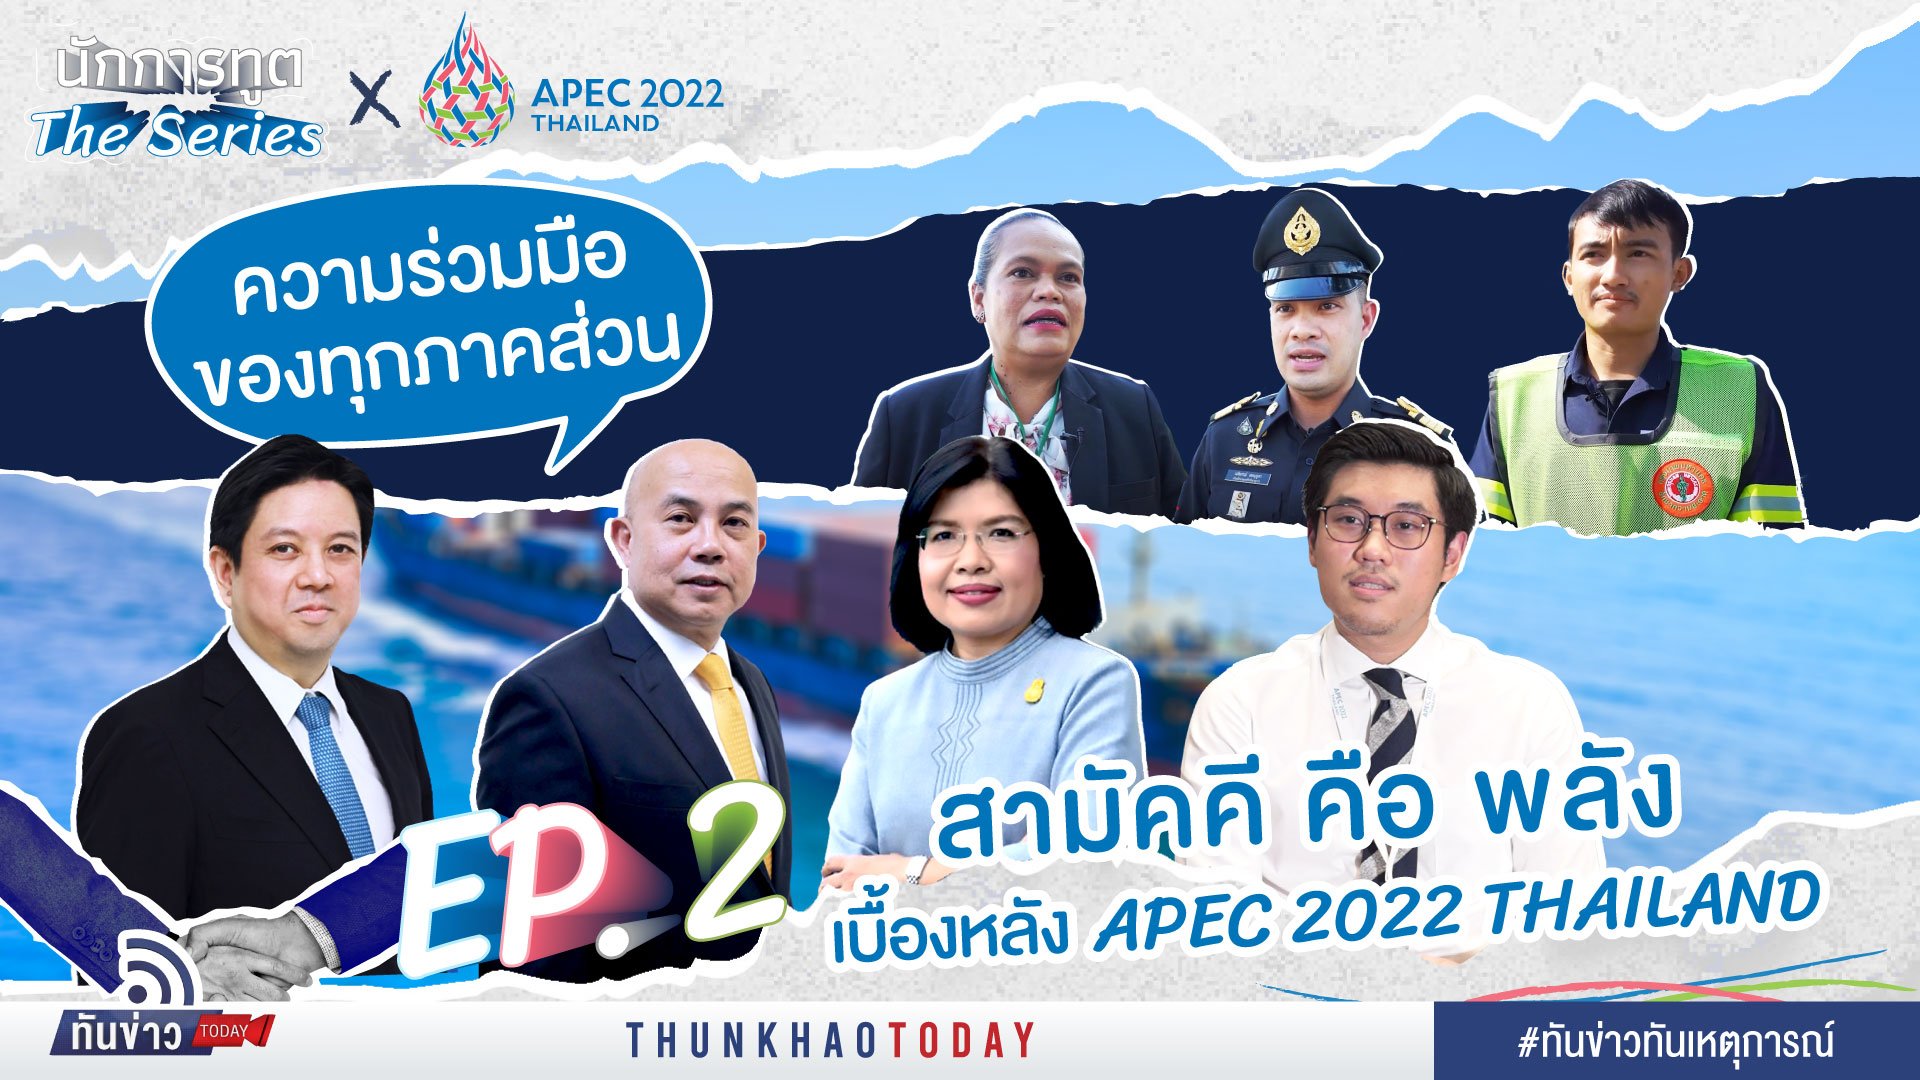 สามัคคีคือพลัง เบื้องหลัง APEC 2022 THAILAND